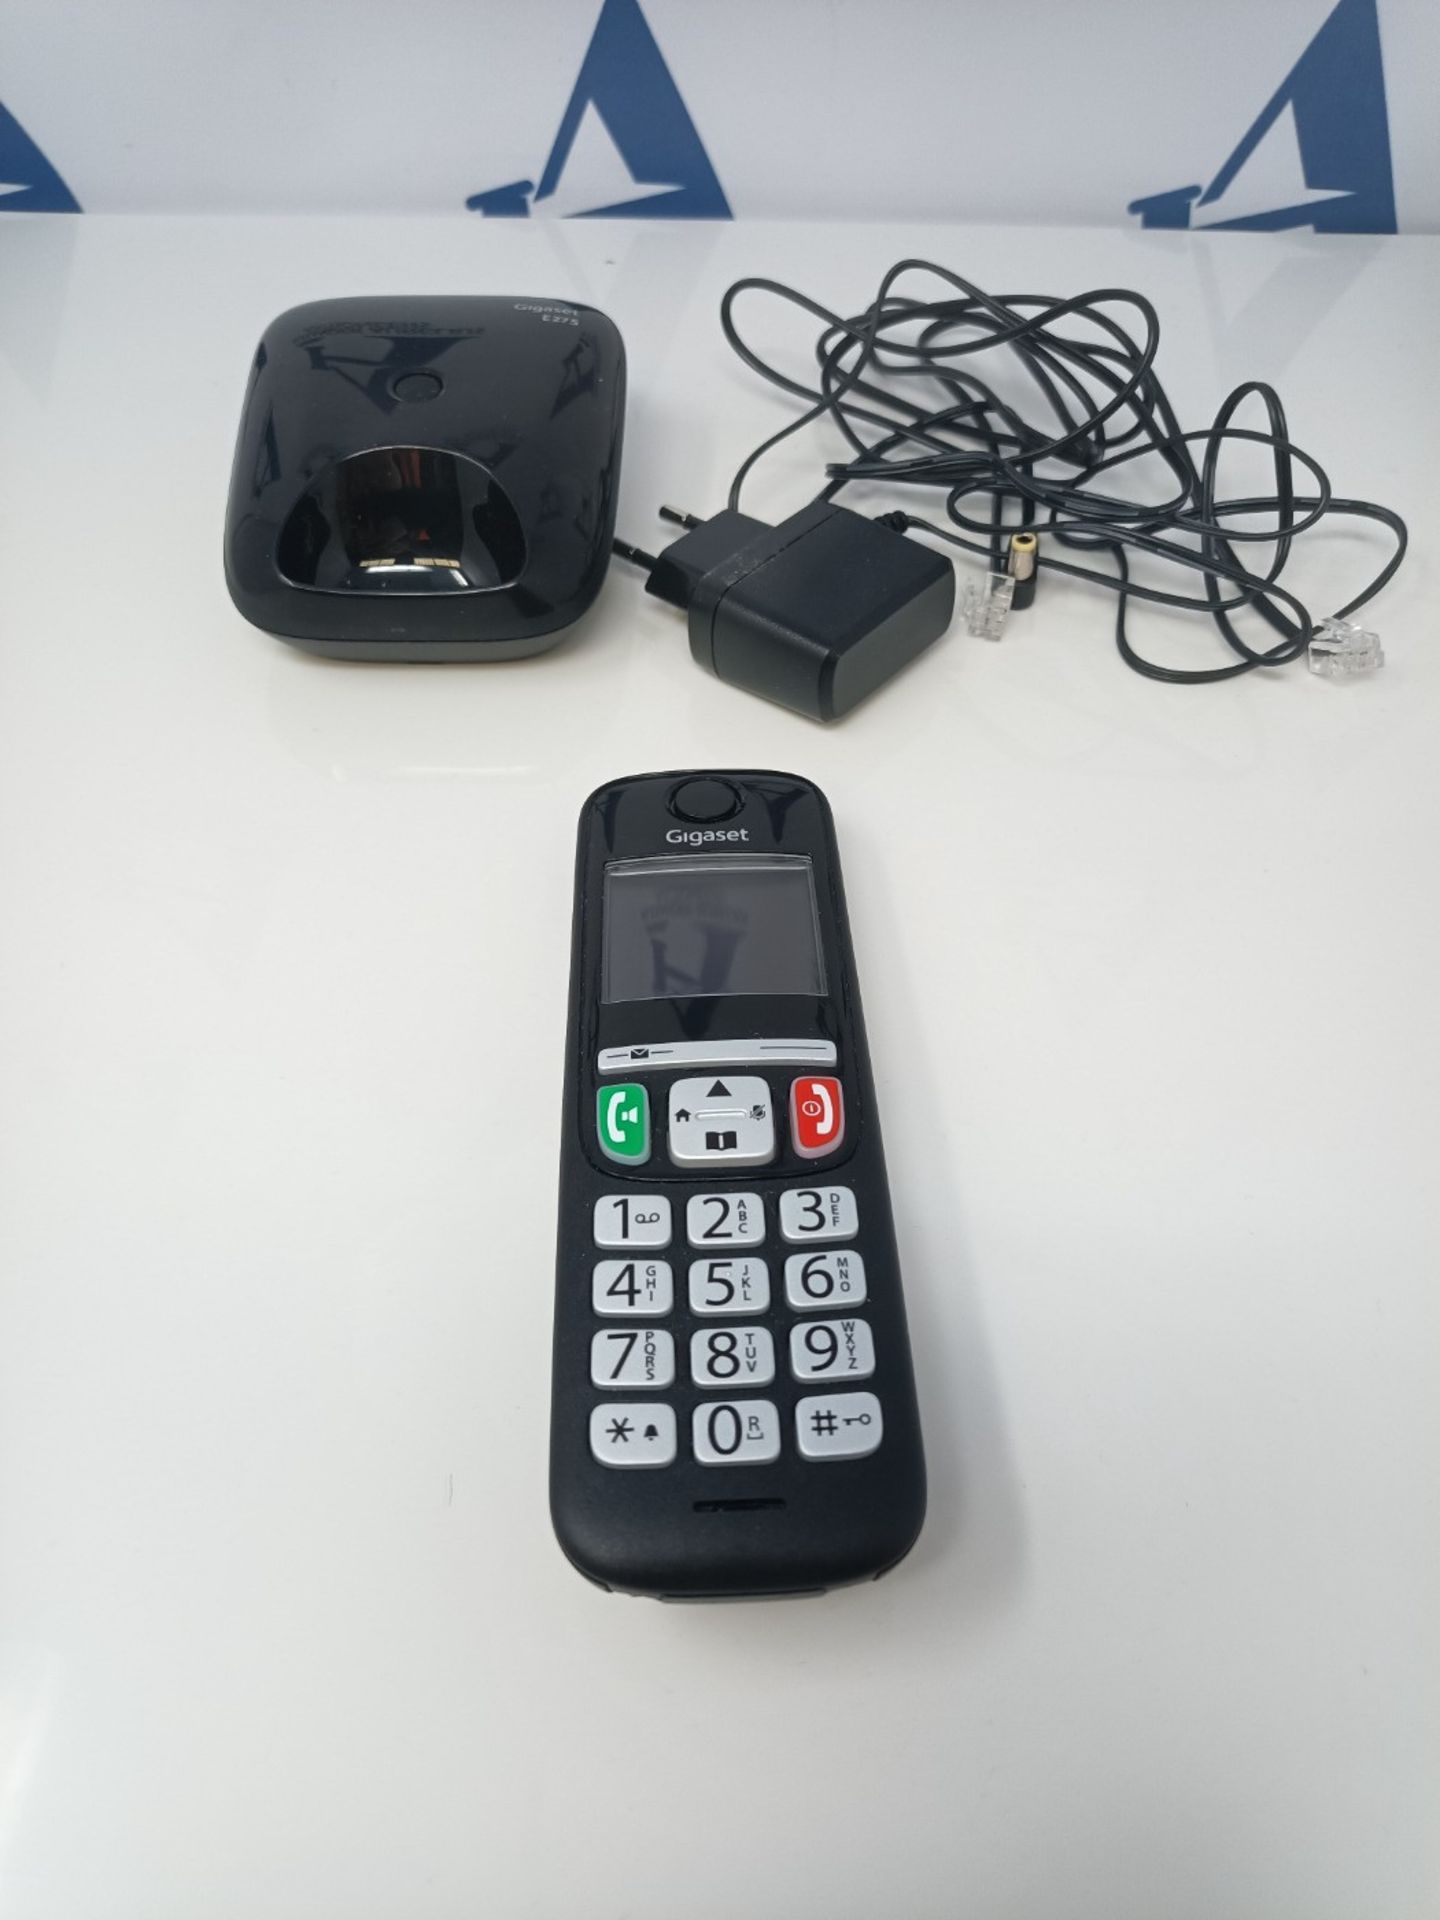 Gigaset E275 Il nuovo telefono cordless dai tasti grandi, numeri grandi e suonerie for - Image 3 of 3